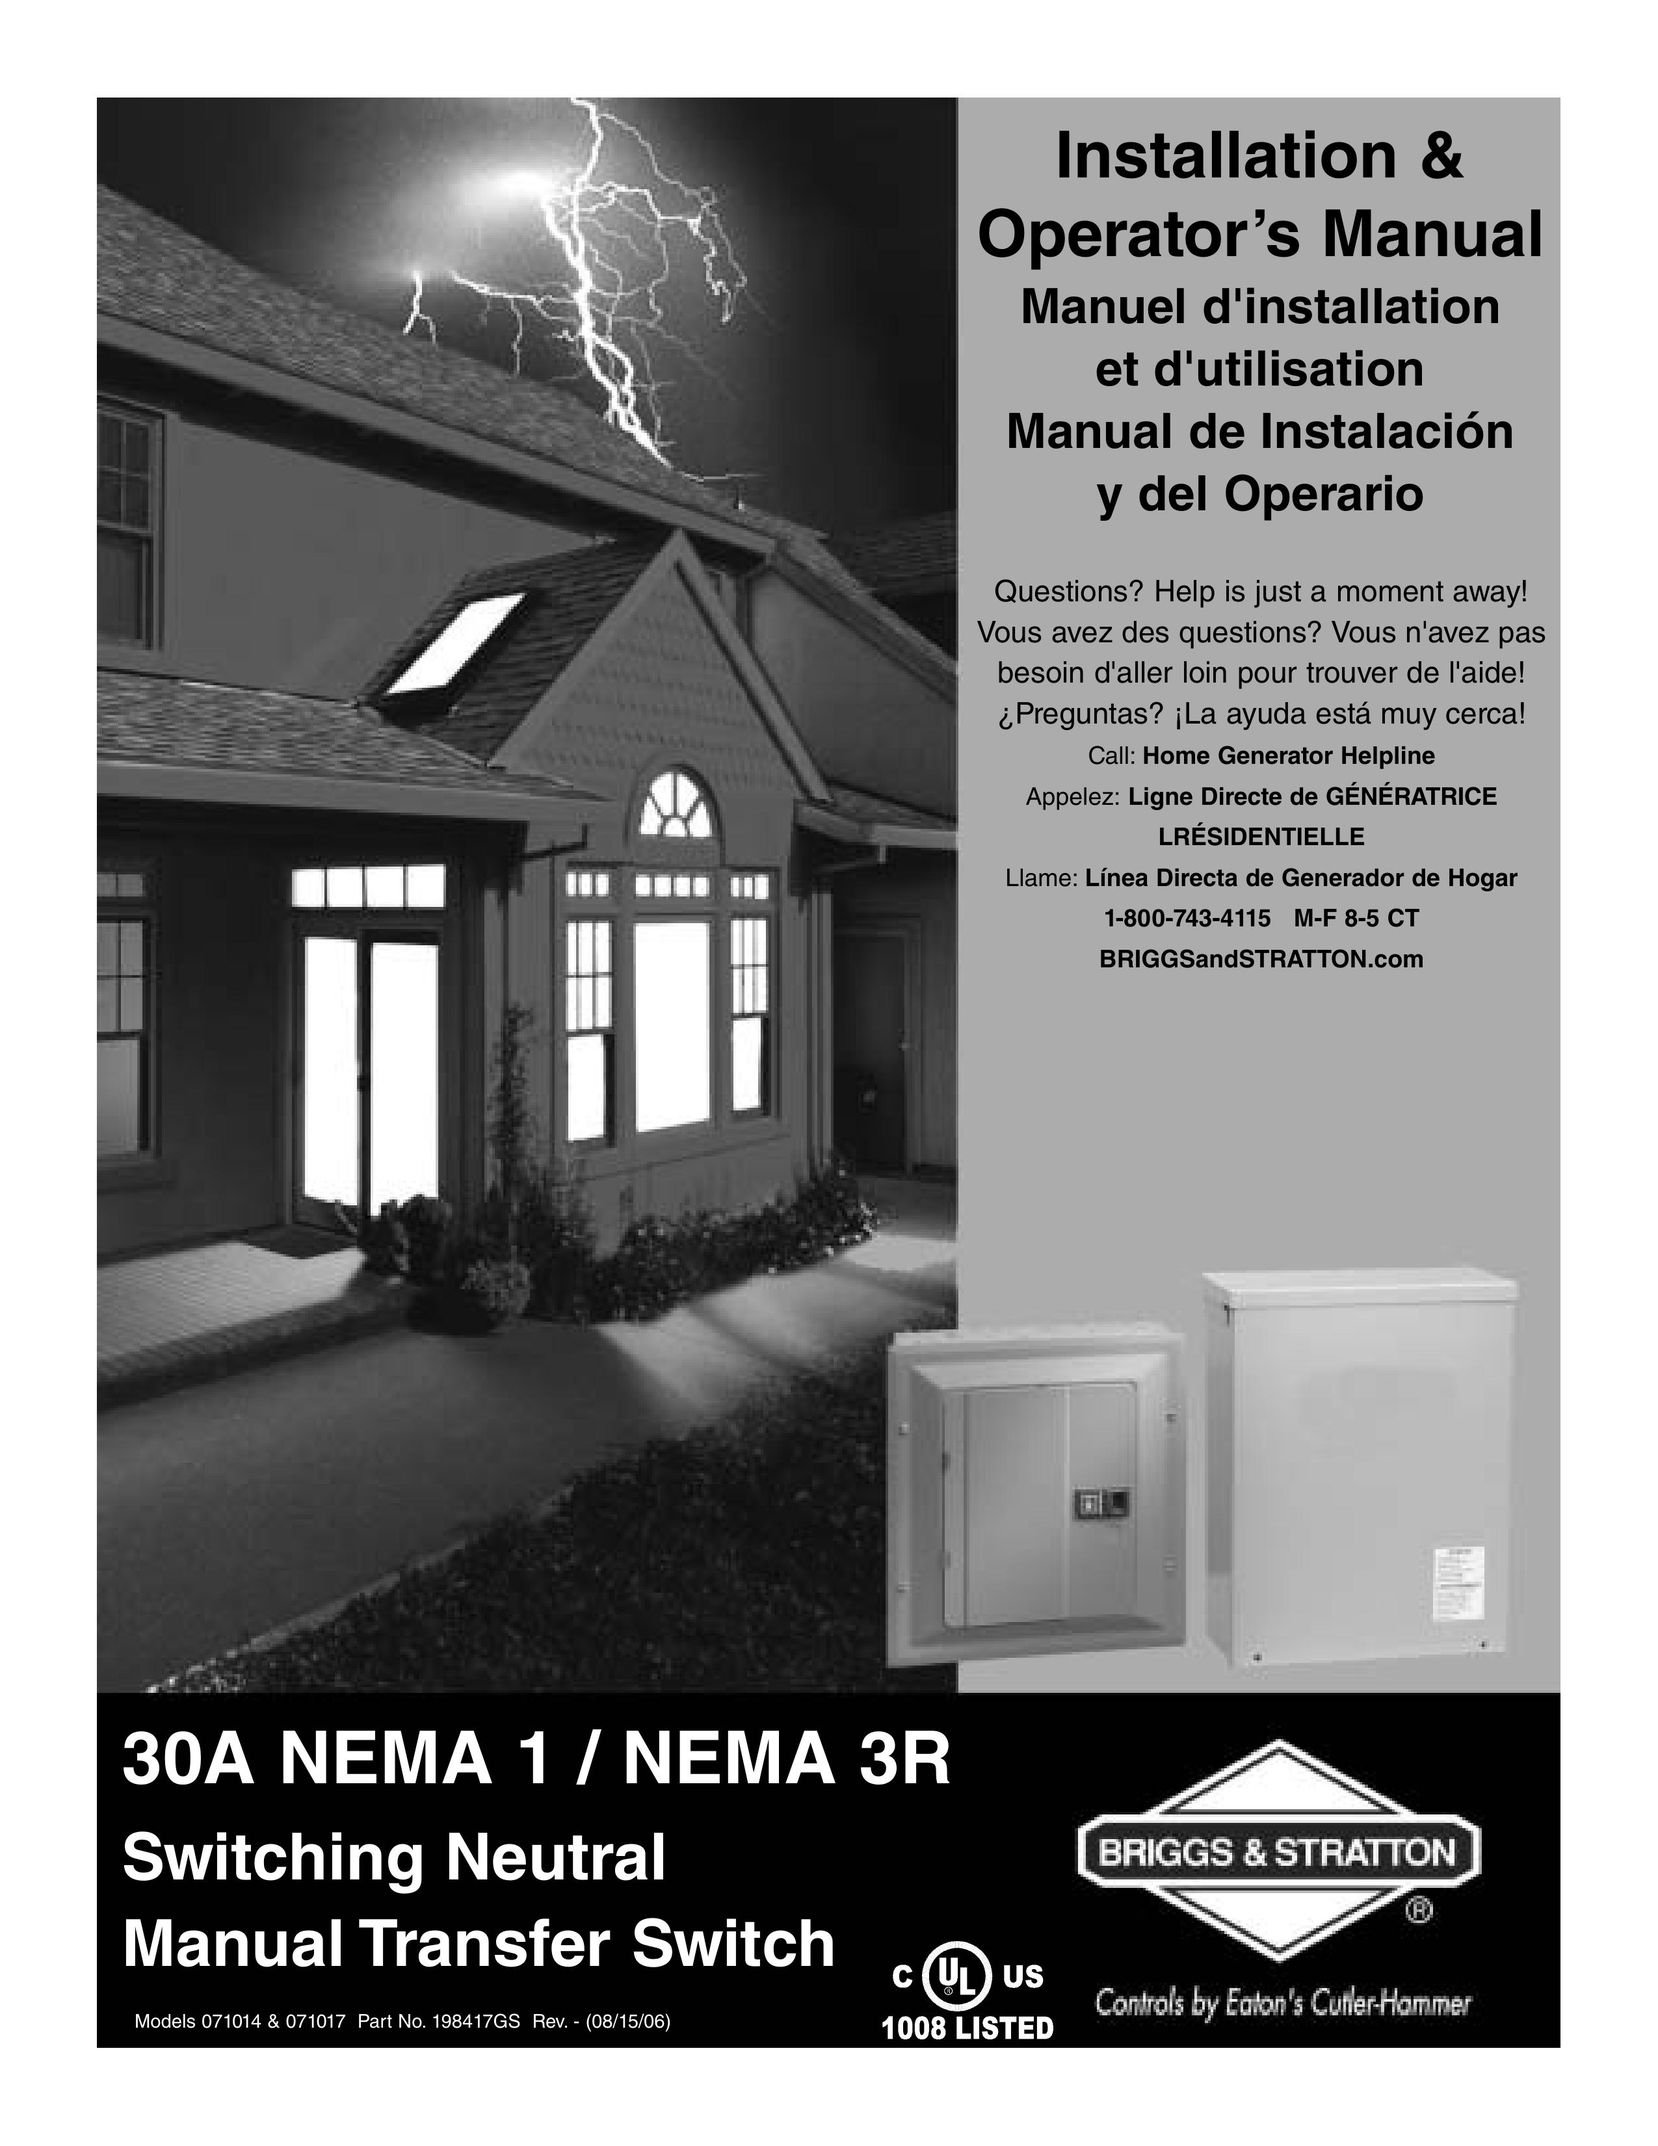 Briggs & Stratton 30A NEMA 1 Switch User Manual